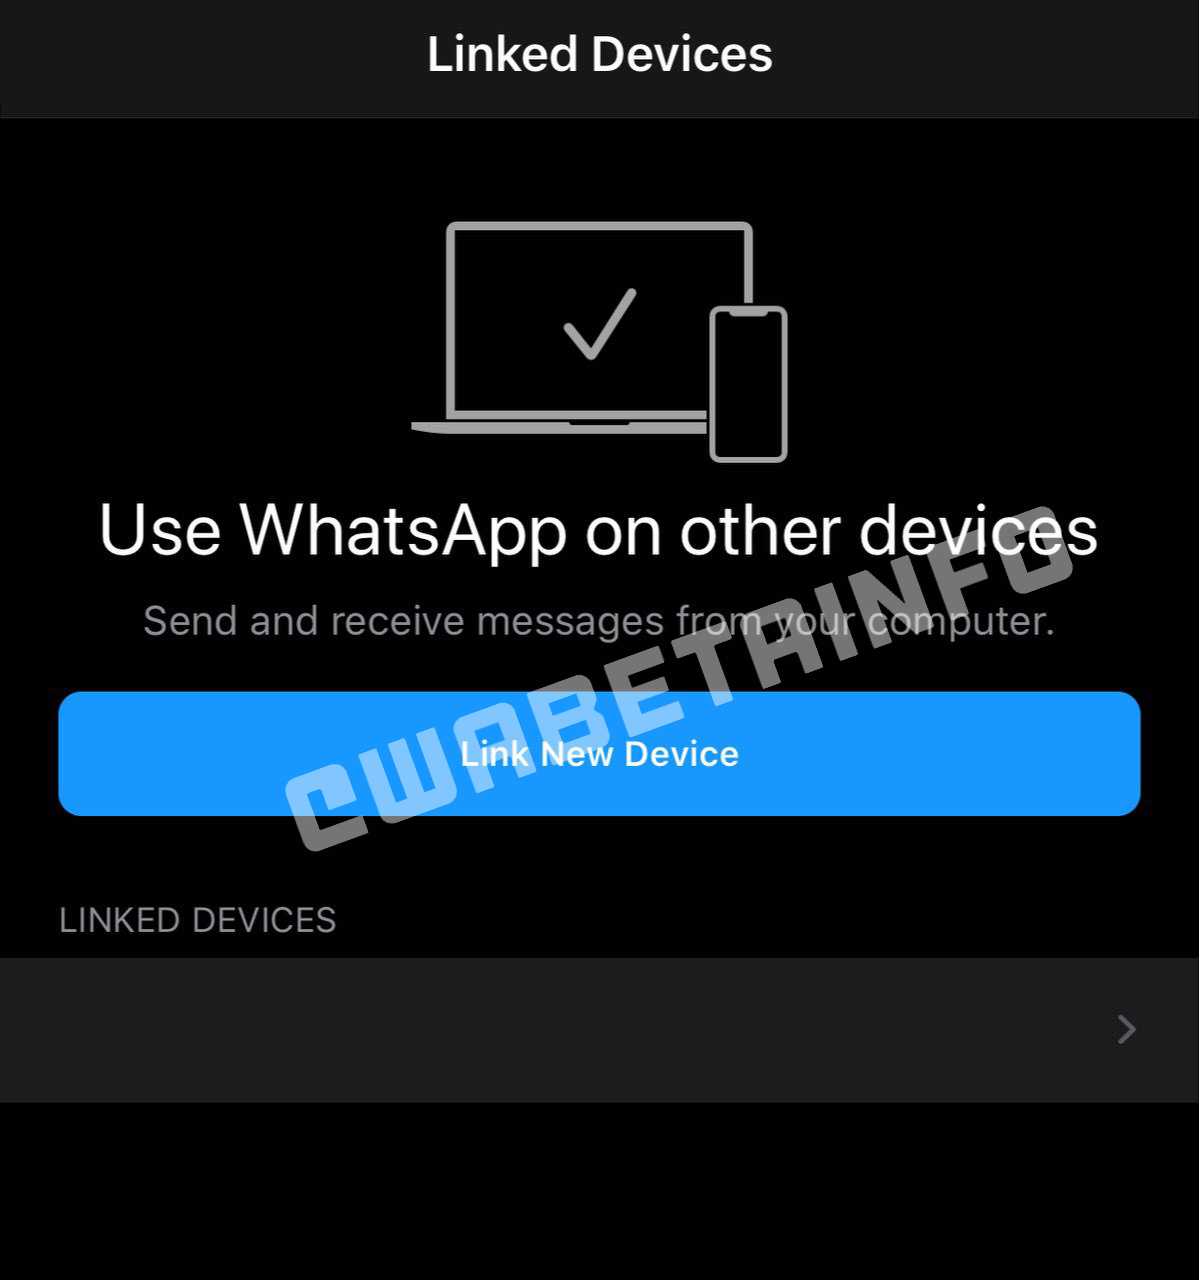 WhatsApp poderá ser usado em até quatro aparelhos ao mesmo tempo